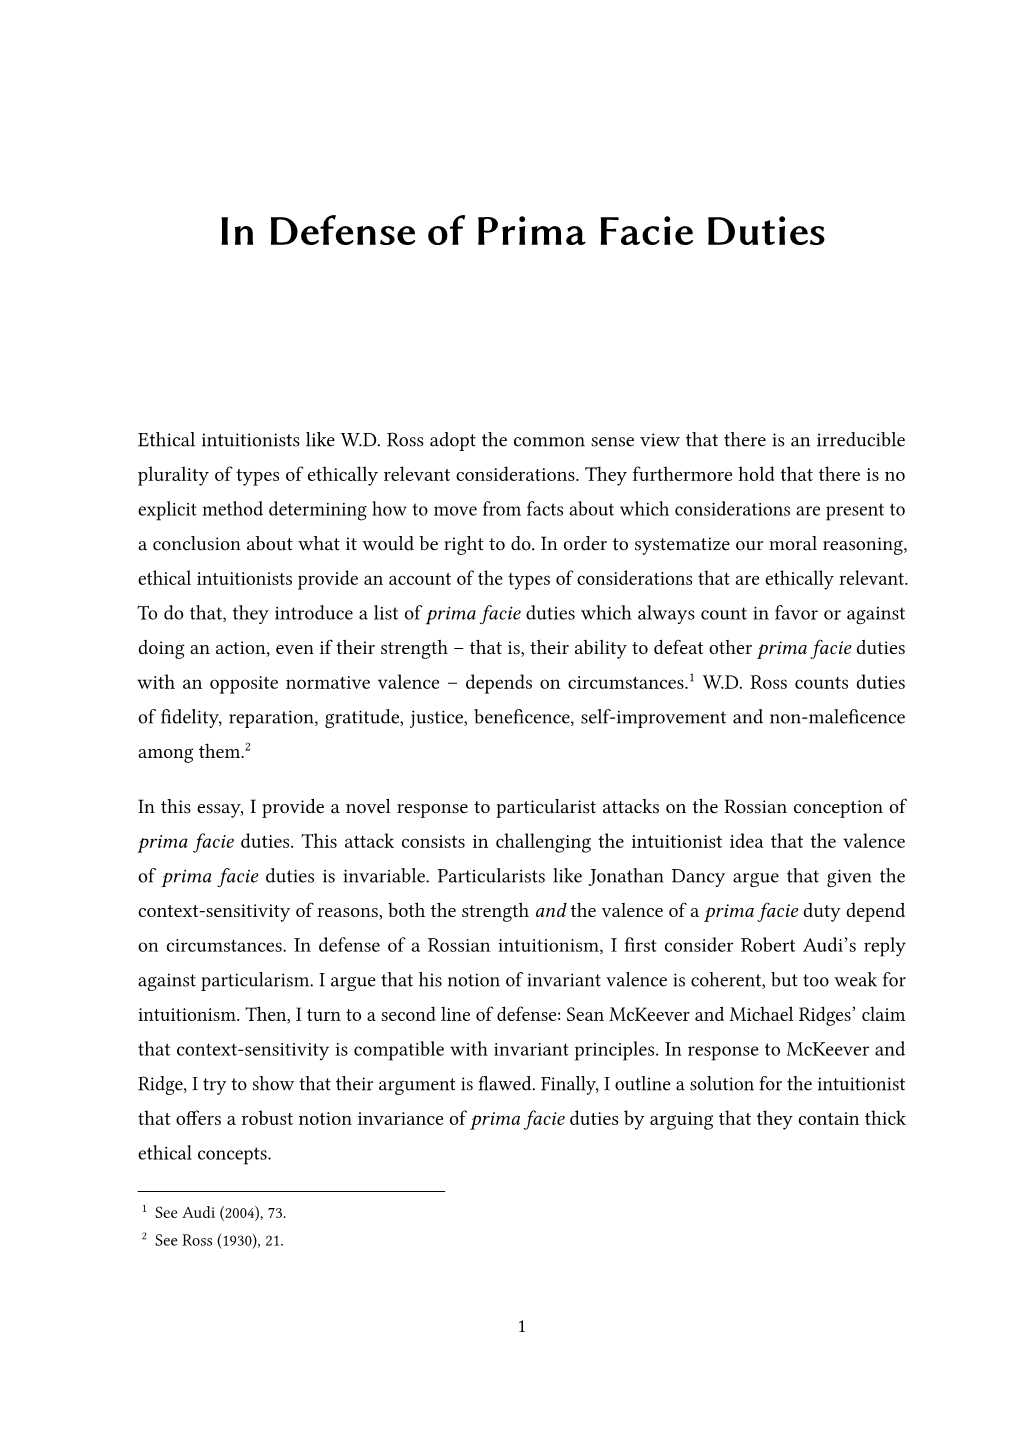 In Defense of Prima Facie Duties